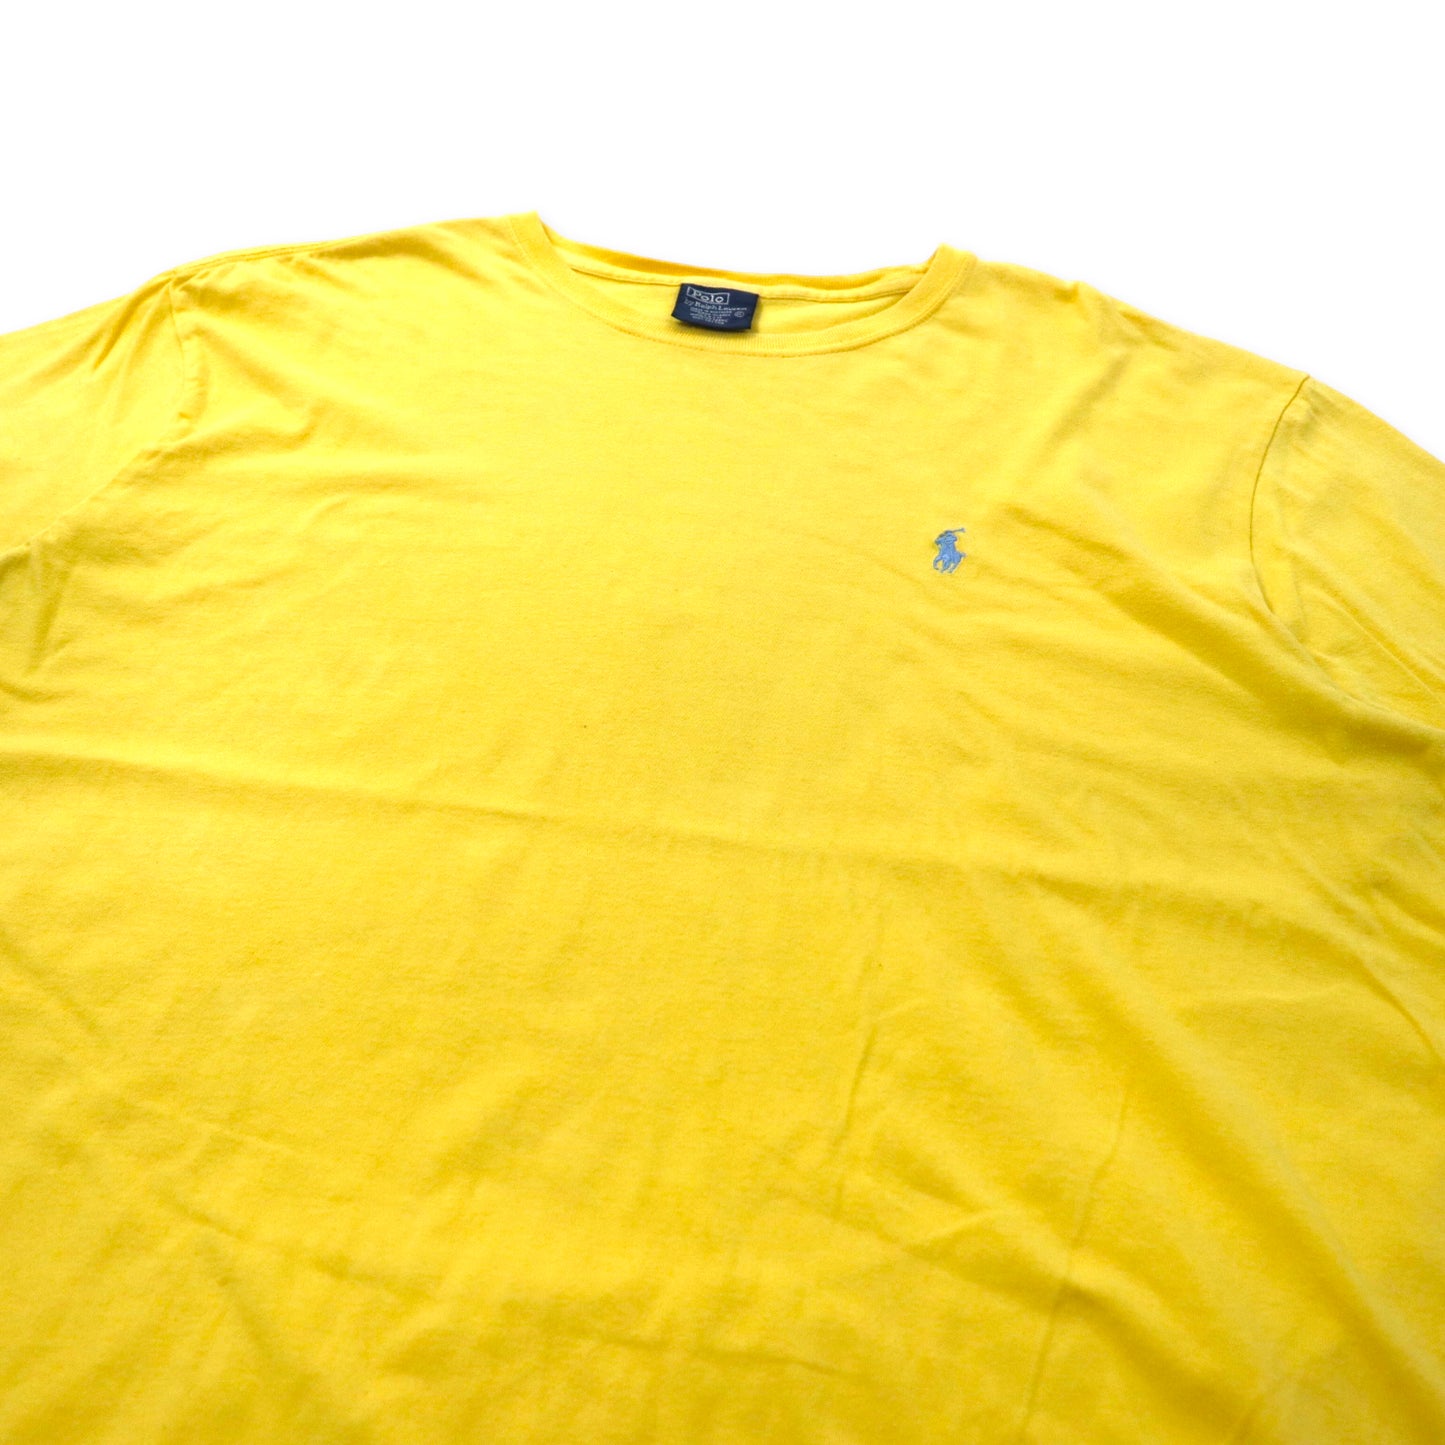 Polo by Ralph Lauren ワンポイントロゴTシャツ XL イエロー コットン スモールポニー刺繍 ビッグサイズ